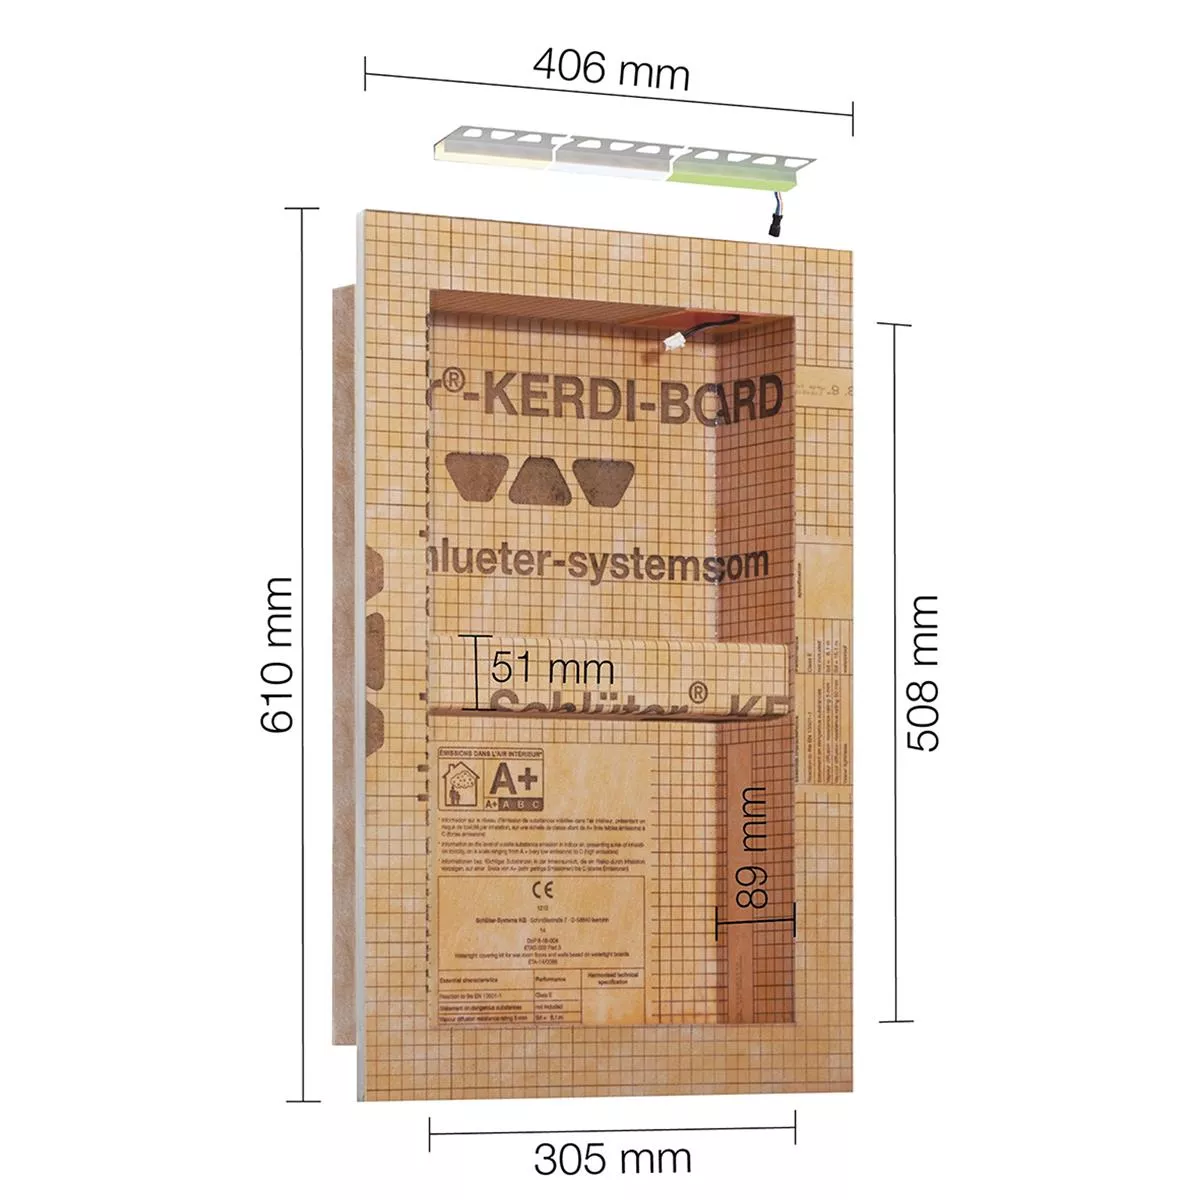 Schlüter Kerdi Board NLT niche-setti LED-valaistus lämmin valkoinen 30,5x50,8x0,89 cm